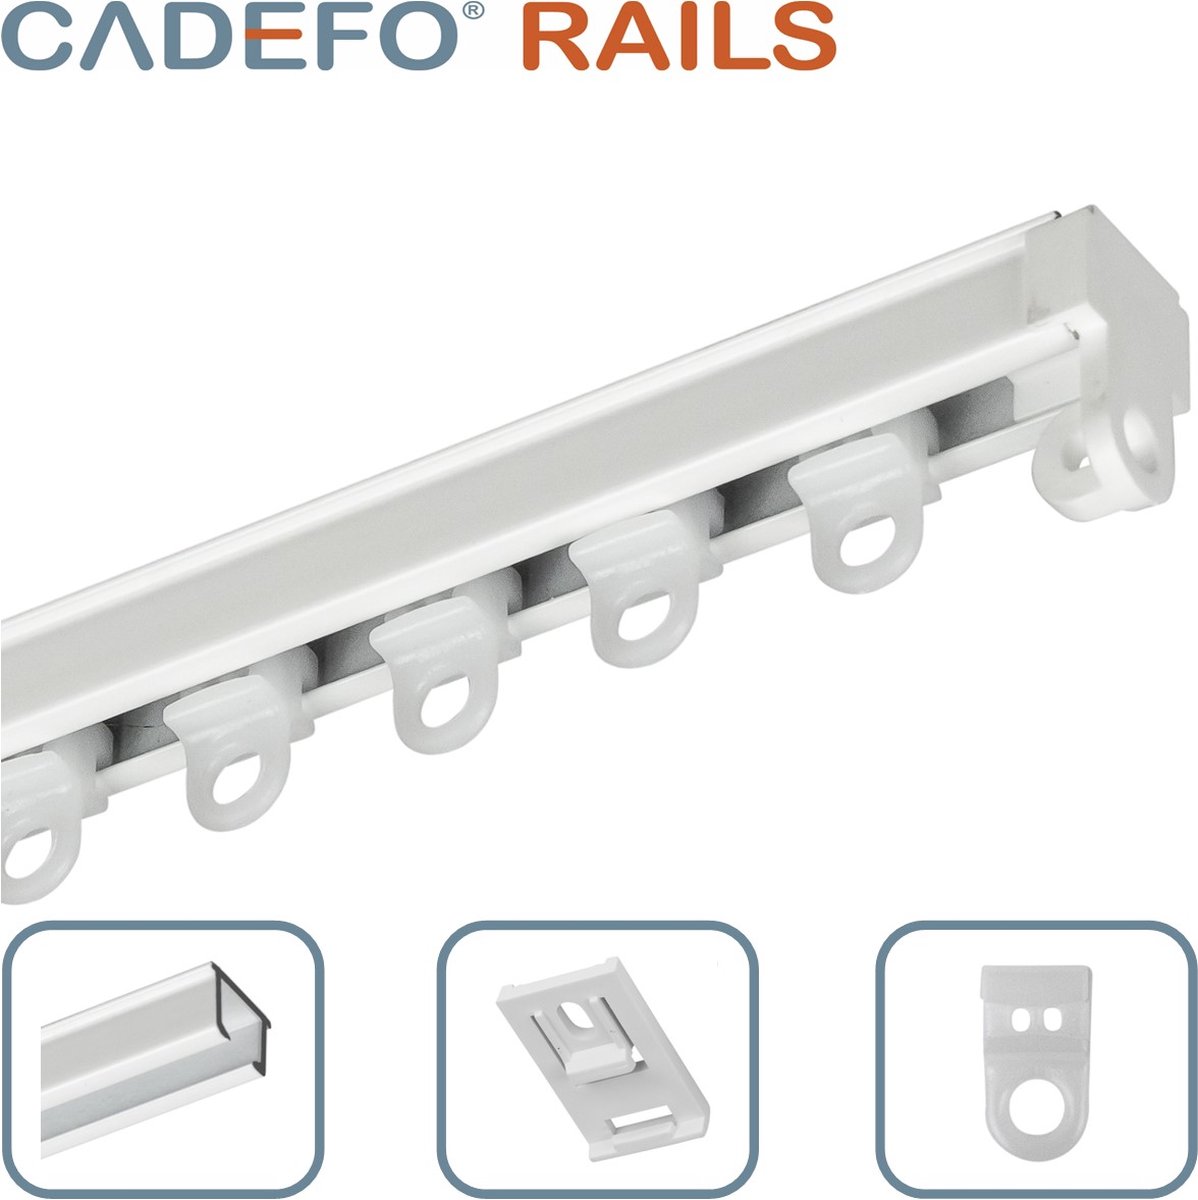 CADEFO RAILS (451 - 500 cm) Gordijnrails - Compleet op maat! - UIT 1 STUK - Leverbaar tot 6 meter - Plafondbevestiging - Lengte 455 cm